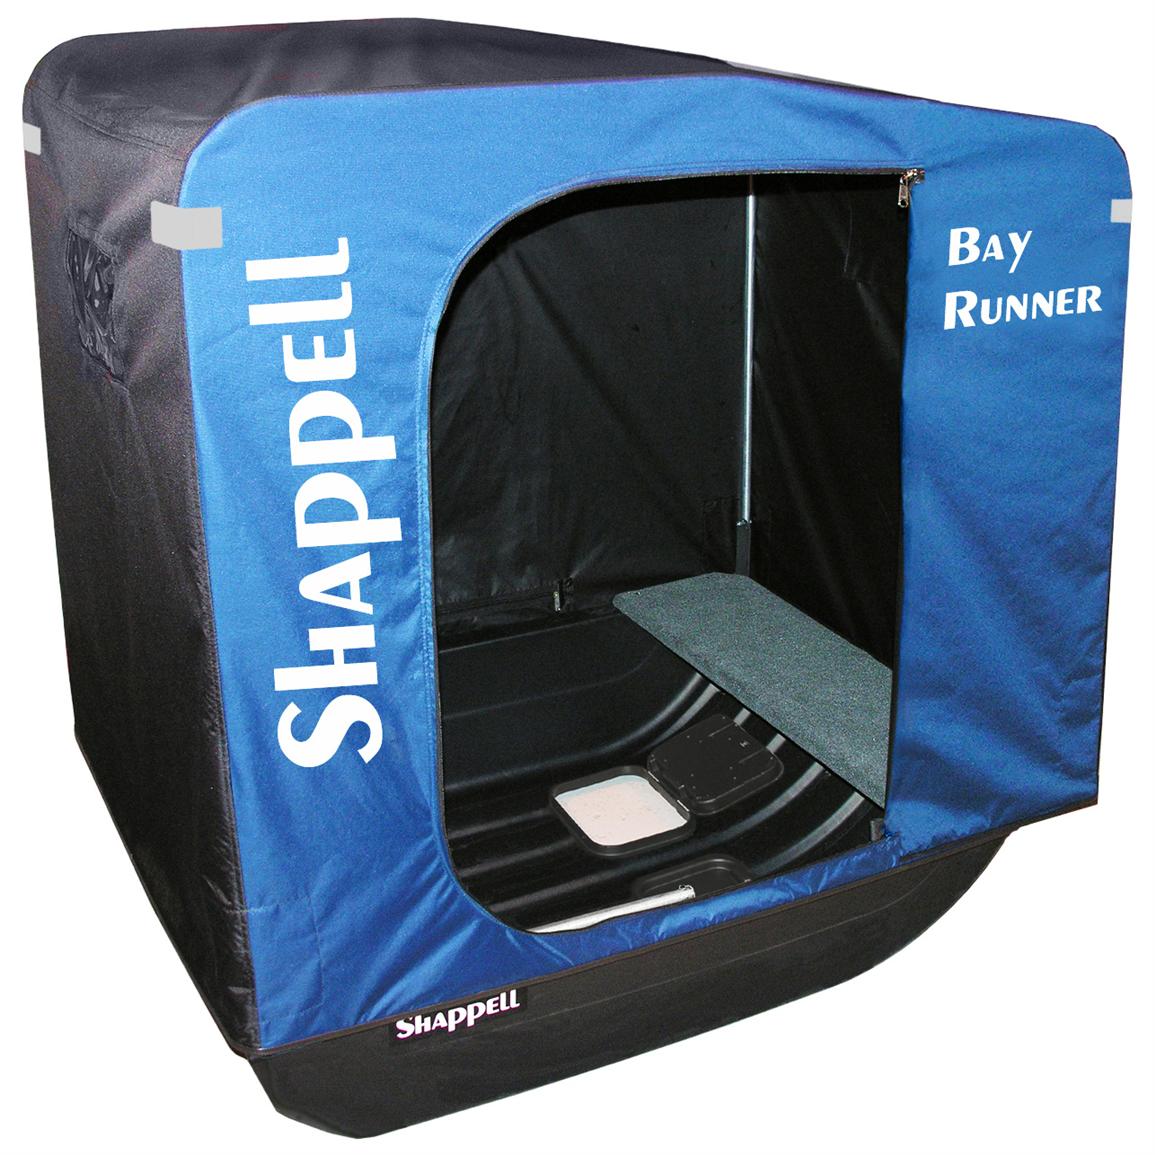 Shappell® Bay Runner™ Sledbase Ice Shelter 582331, Ice